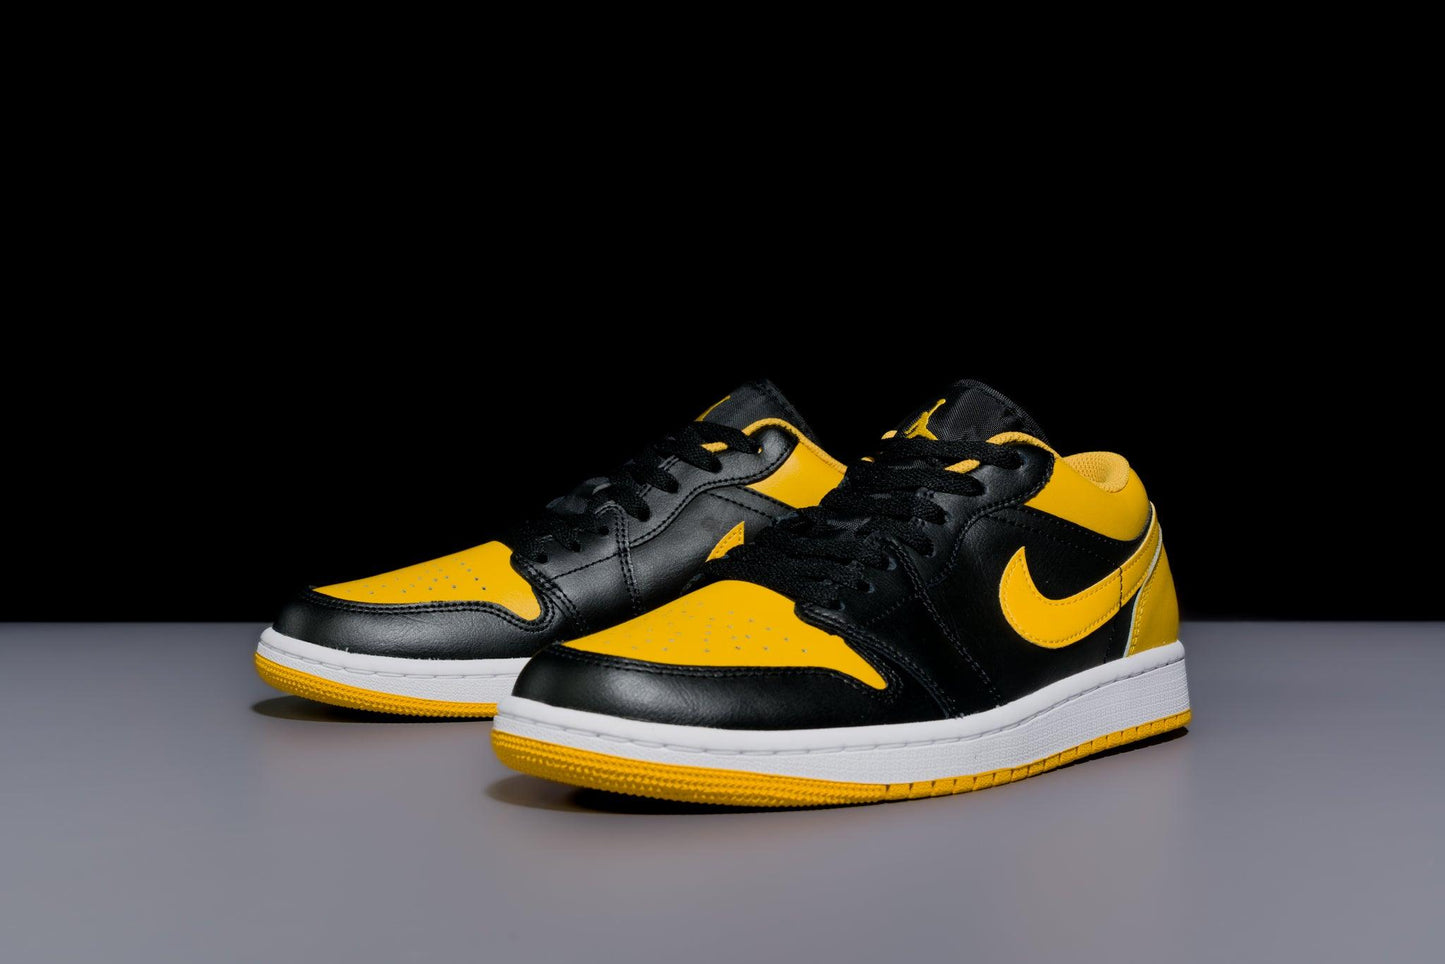 Air Jordan 1 Low "Yellow Ochre" - Urlfreeze Shop